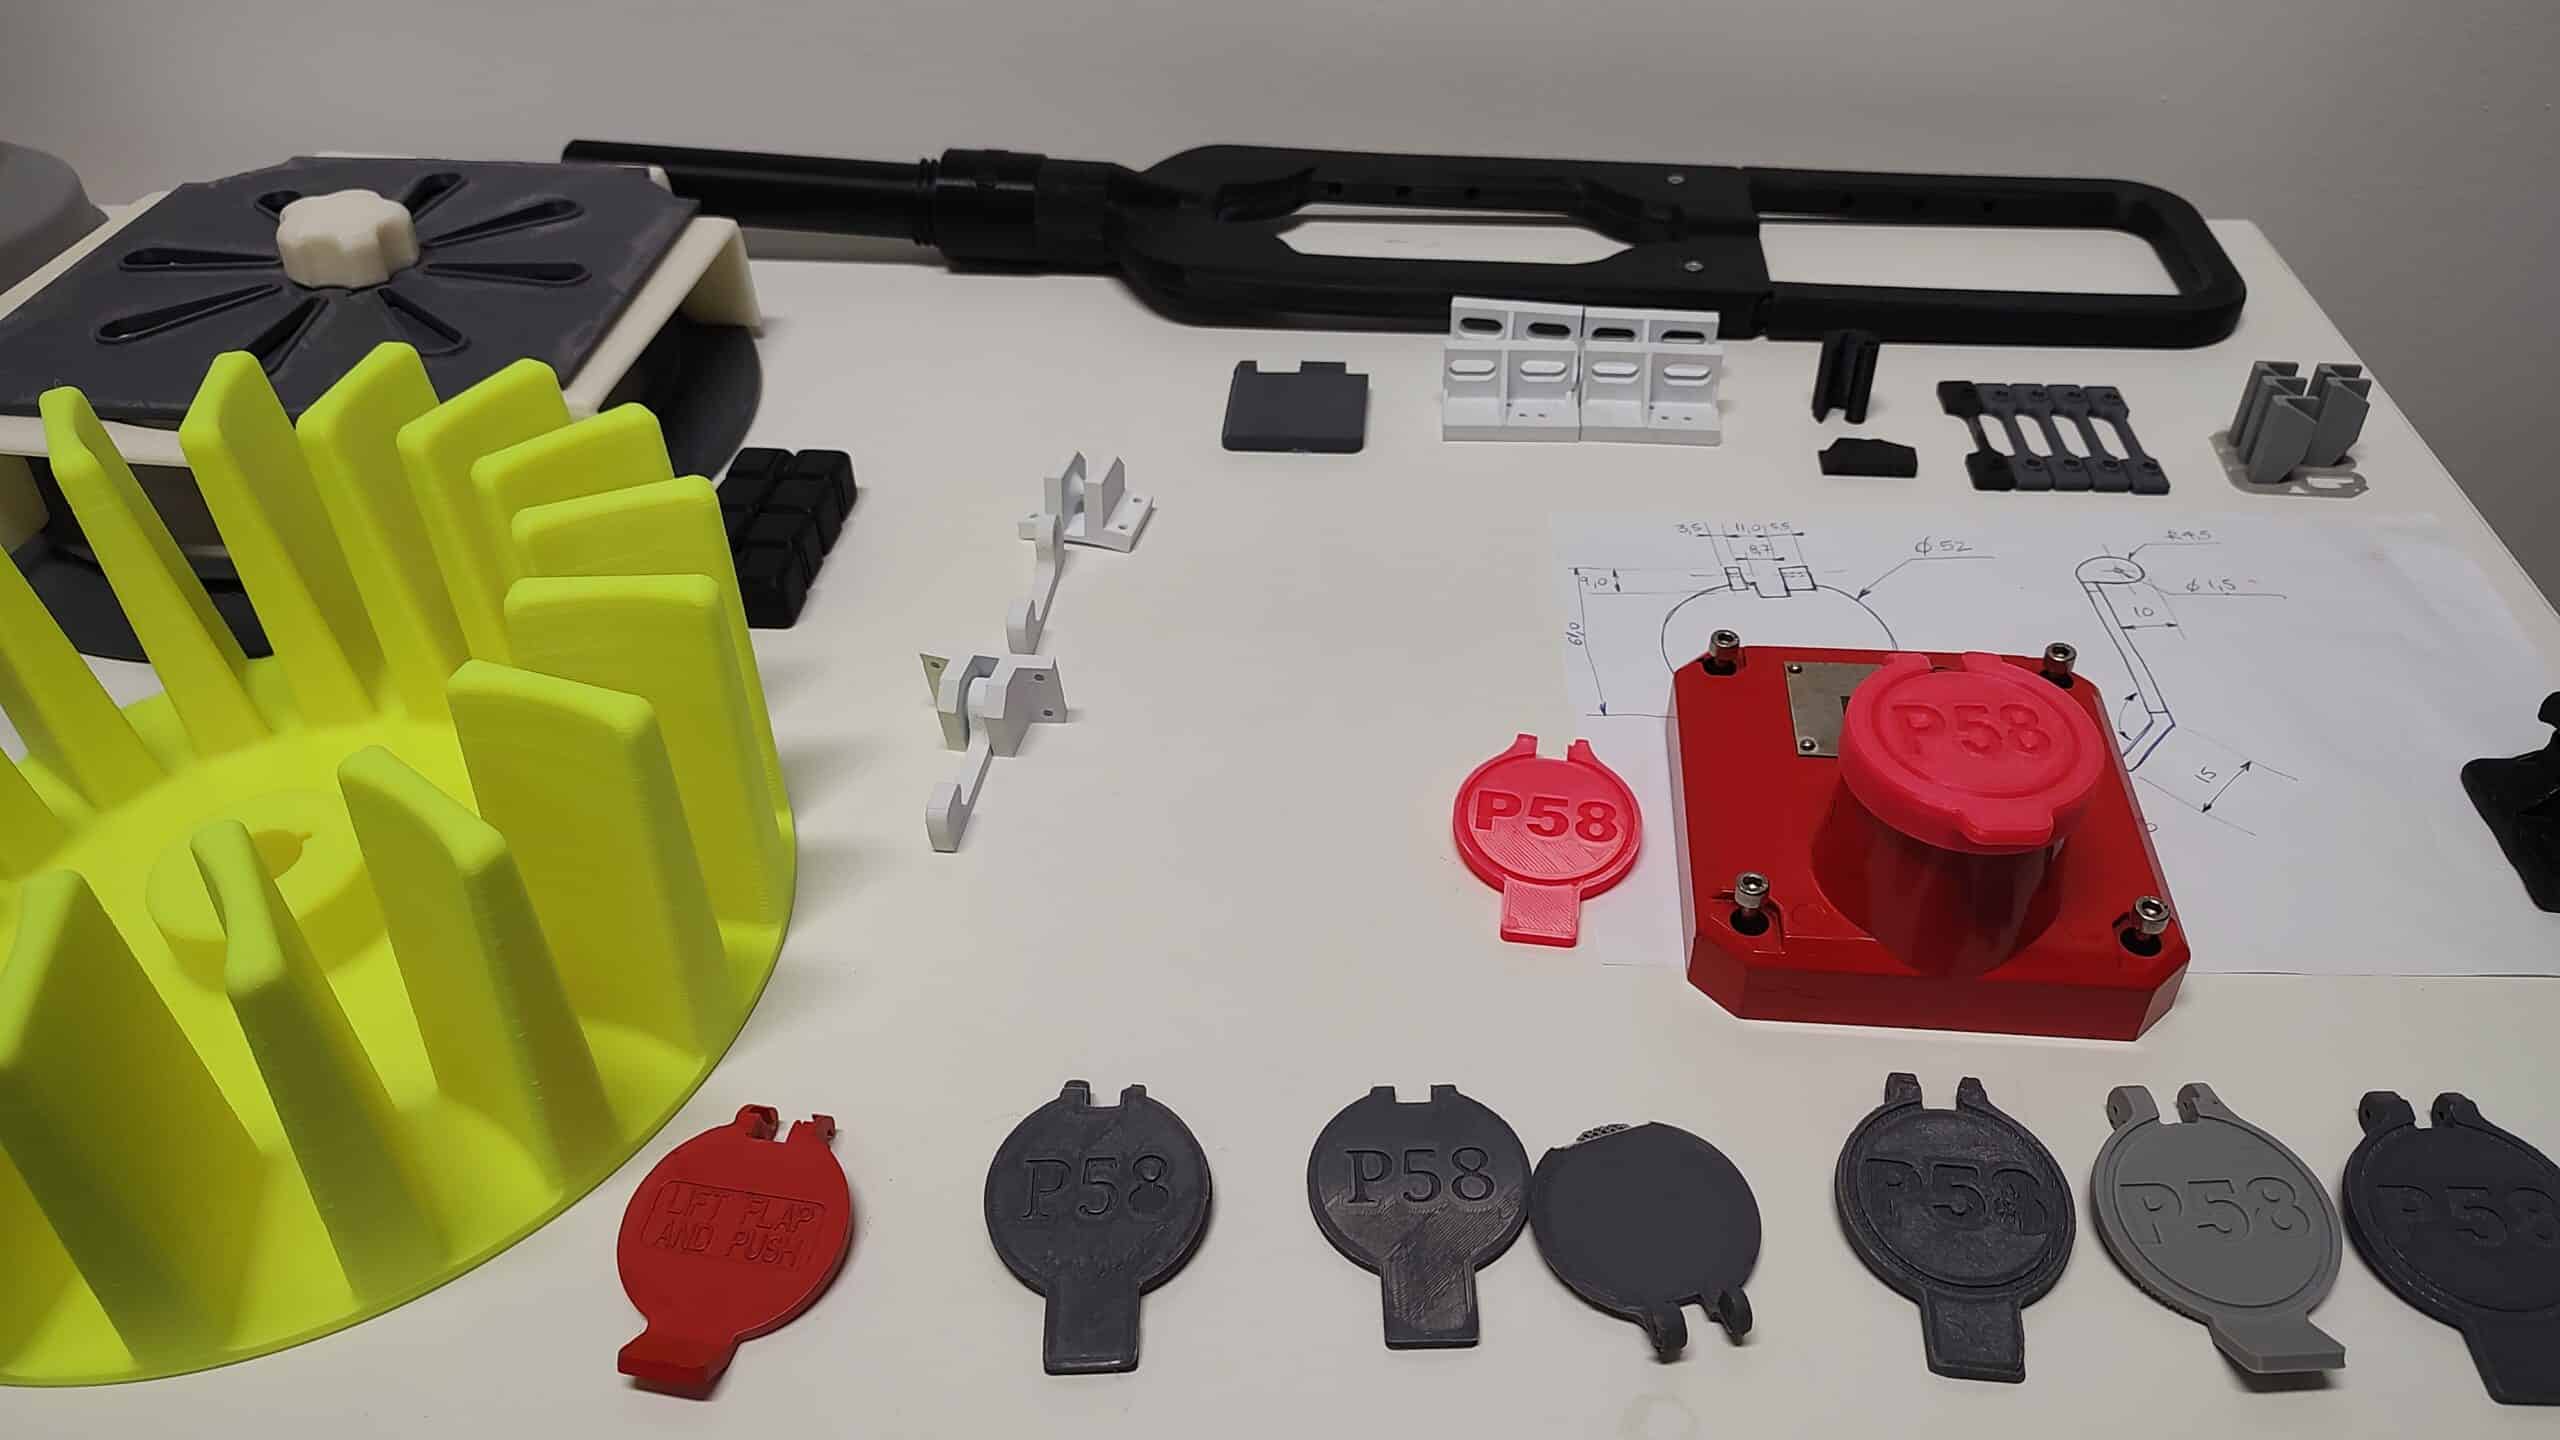 3d - impressão 3D - equipamentos 3D - impressora 3D - preço - peças 3D - petróleo - petrobras